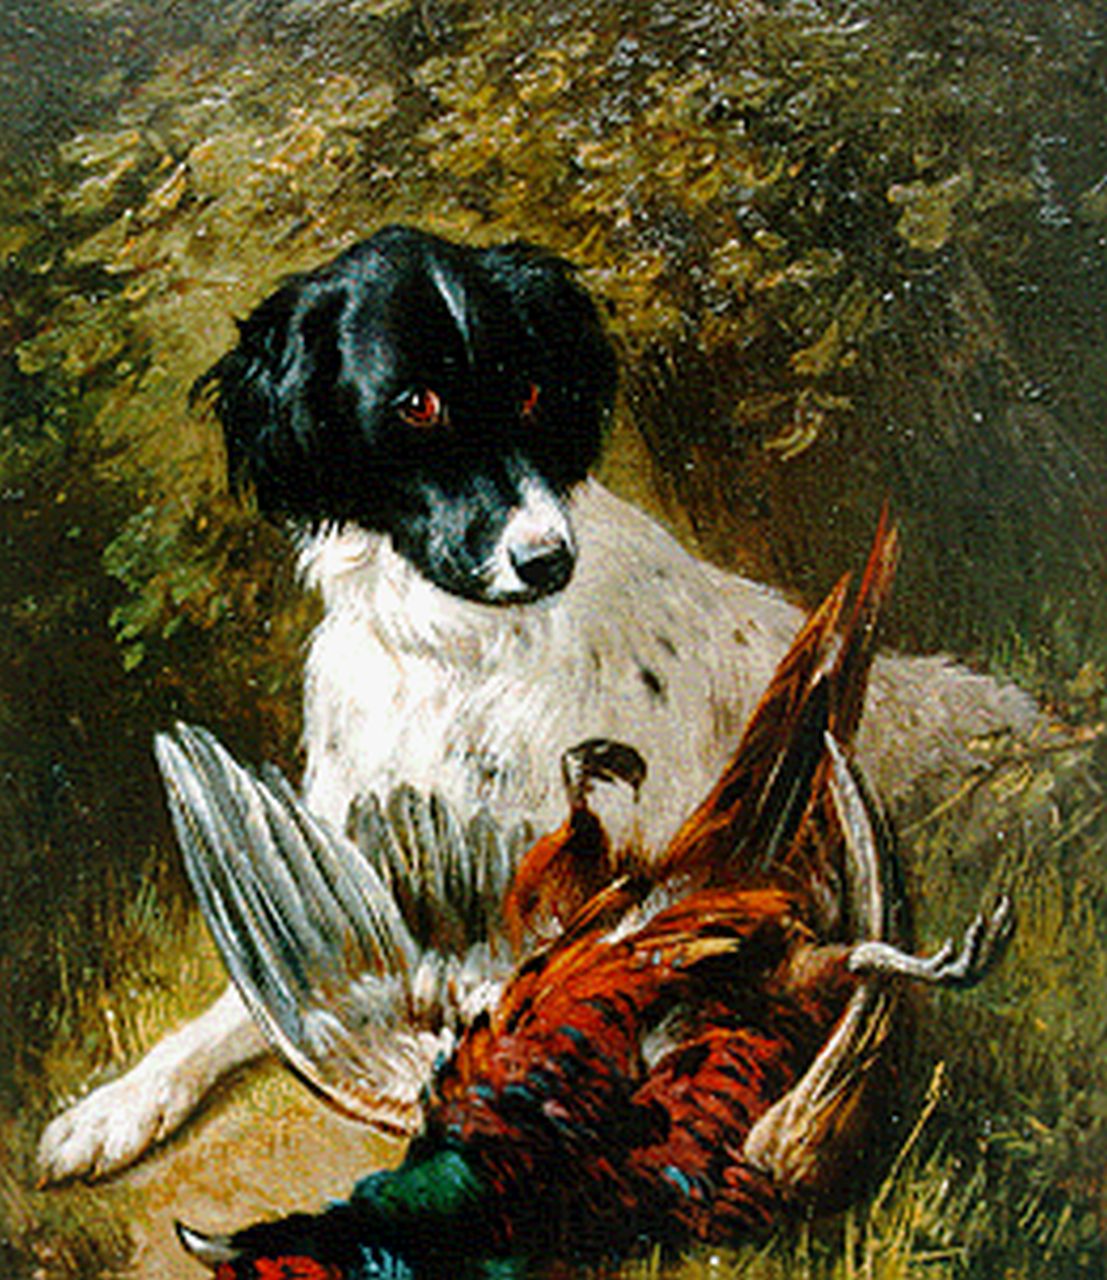 Ronner-Knip H.  | Henriette Ronner-Knip, Spaniel bij zijn buit, olieverf op paneel 19,5 x 15,8 cm, gesigneerd rechtsonder